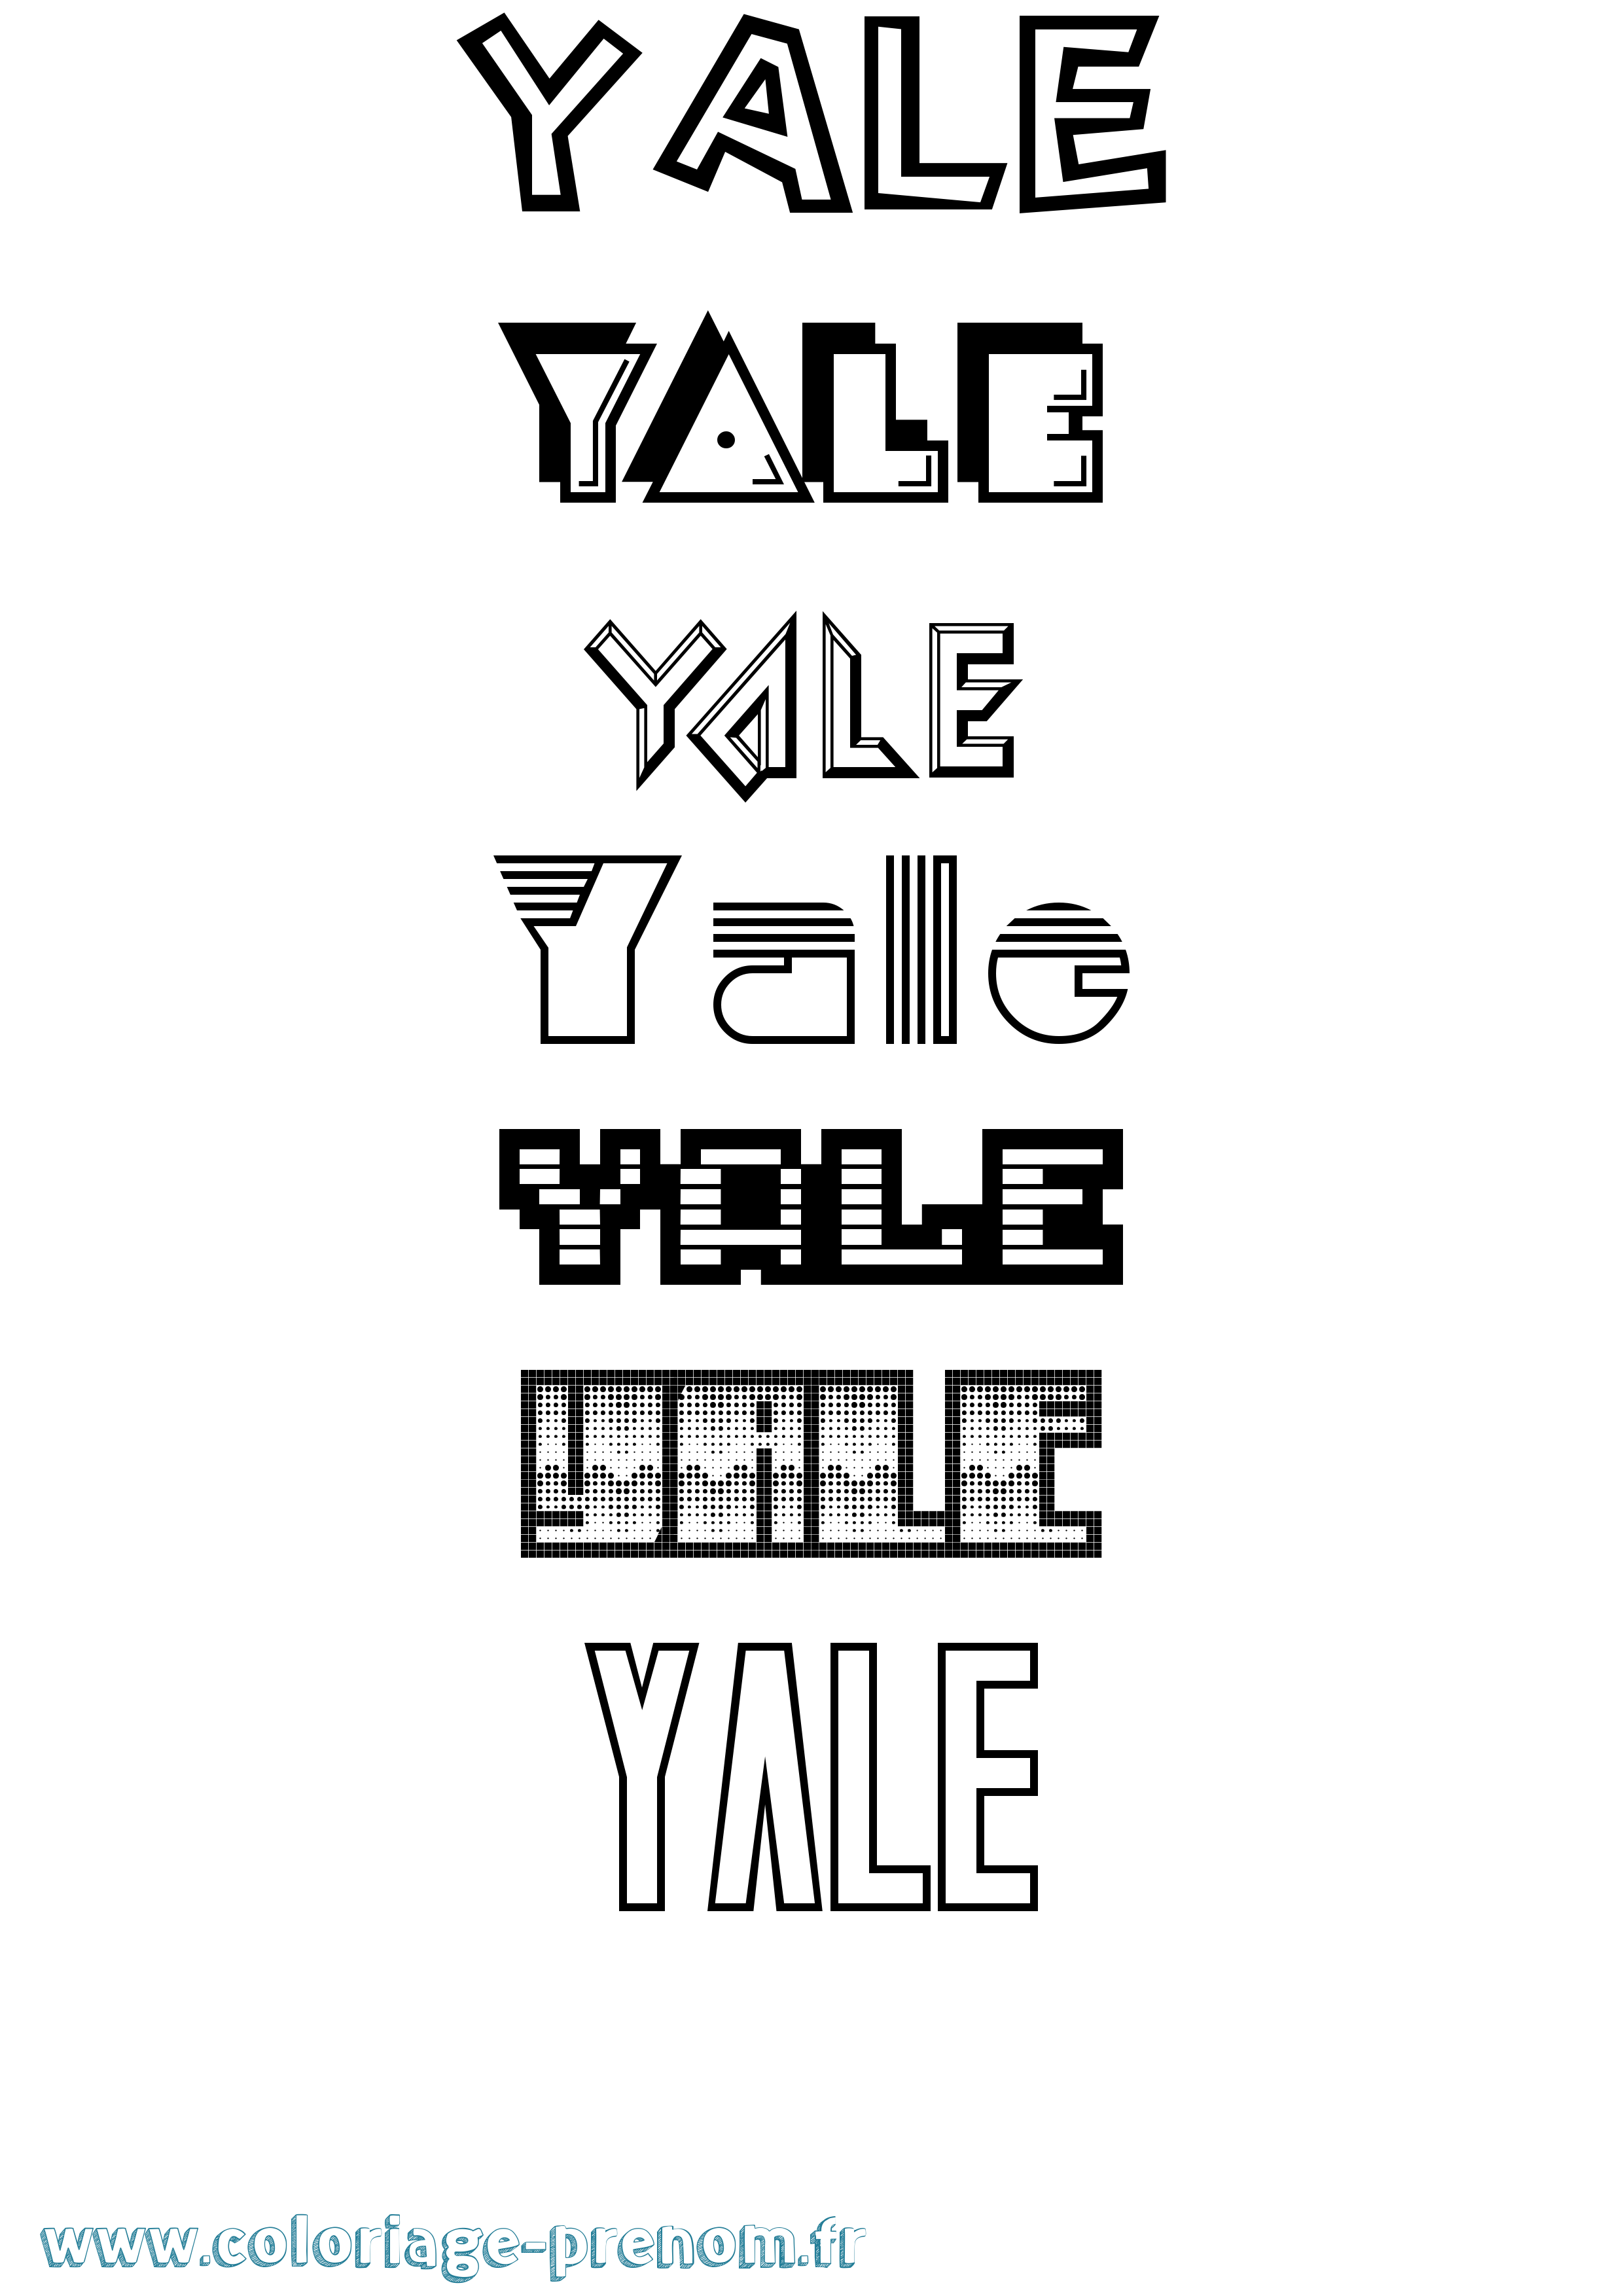 Coloriage prénom Yale Jeux Vidéos